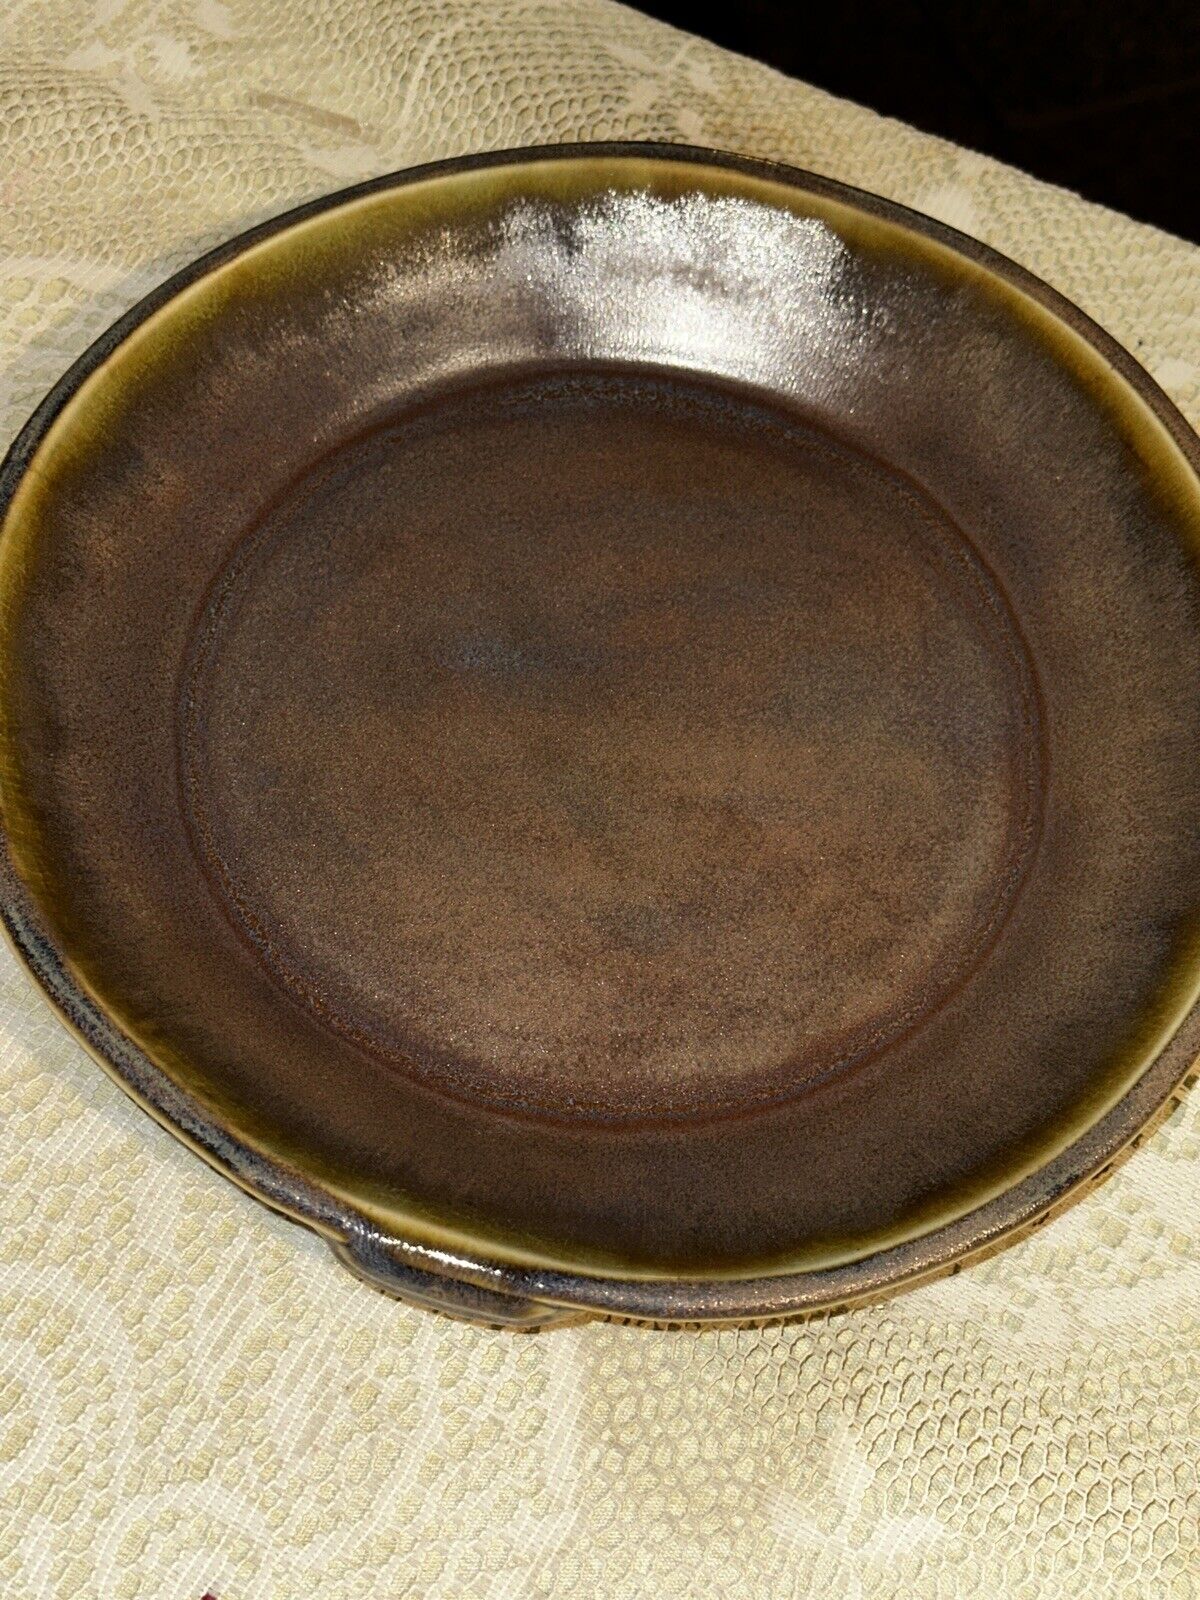 S Olson Art Pottery Glazed Pie Plate Stoneware Glazed HDM Nice 10.4”